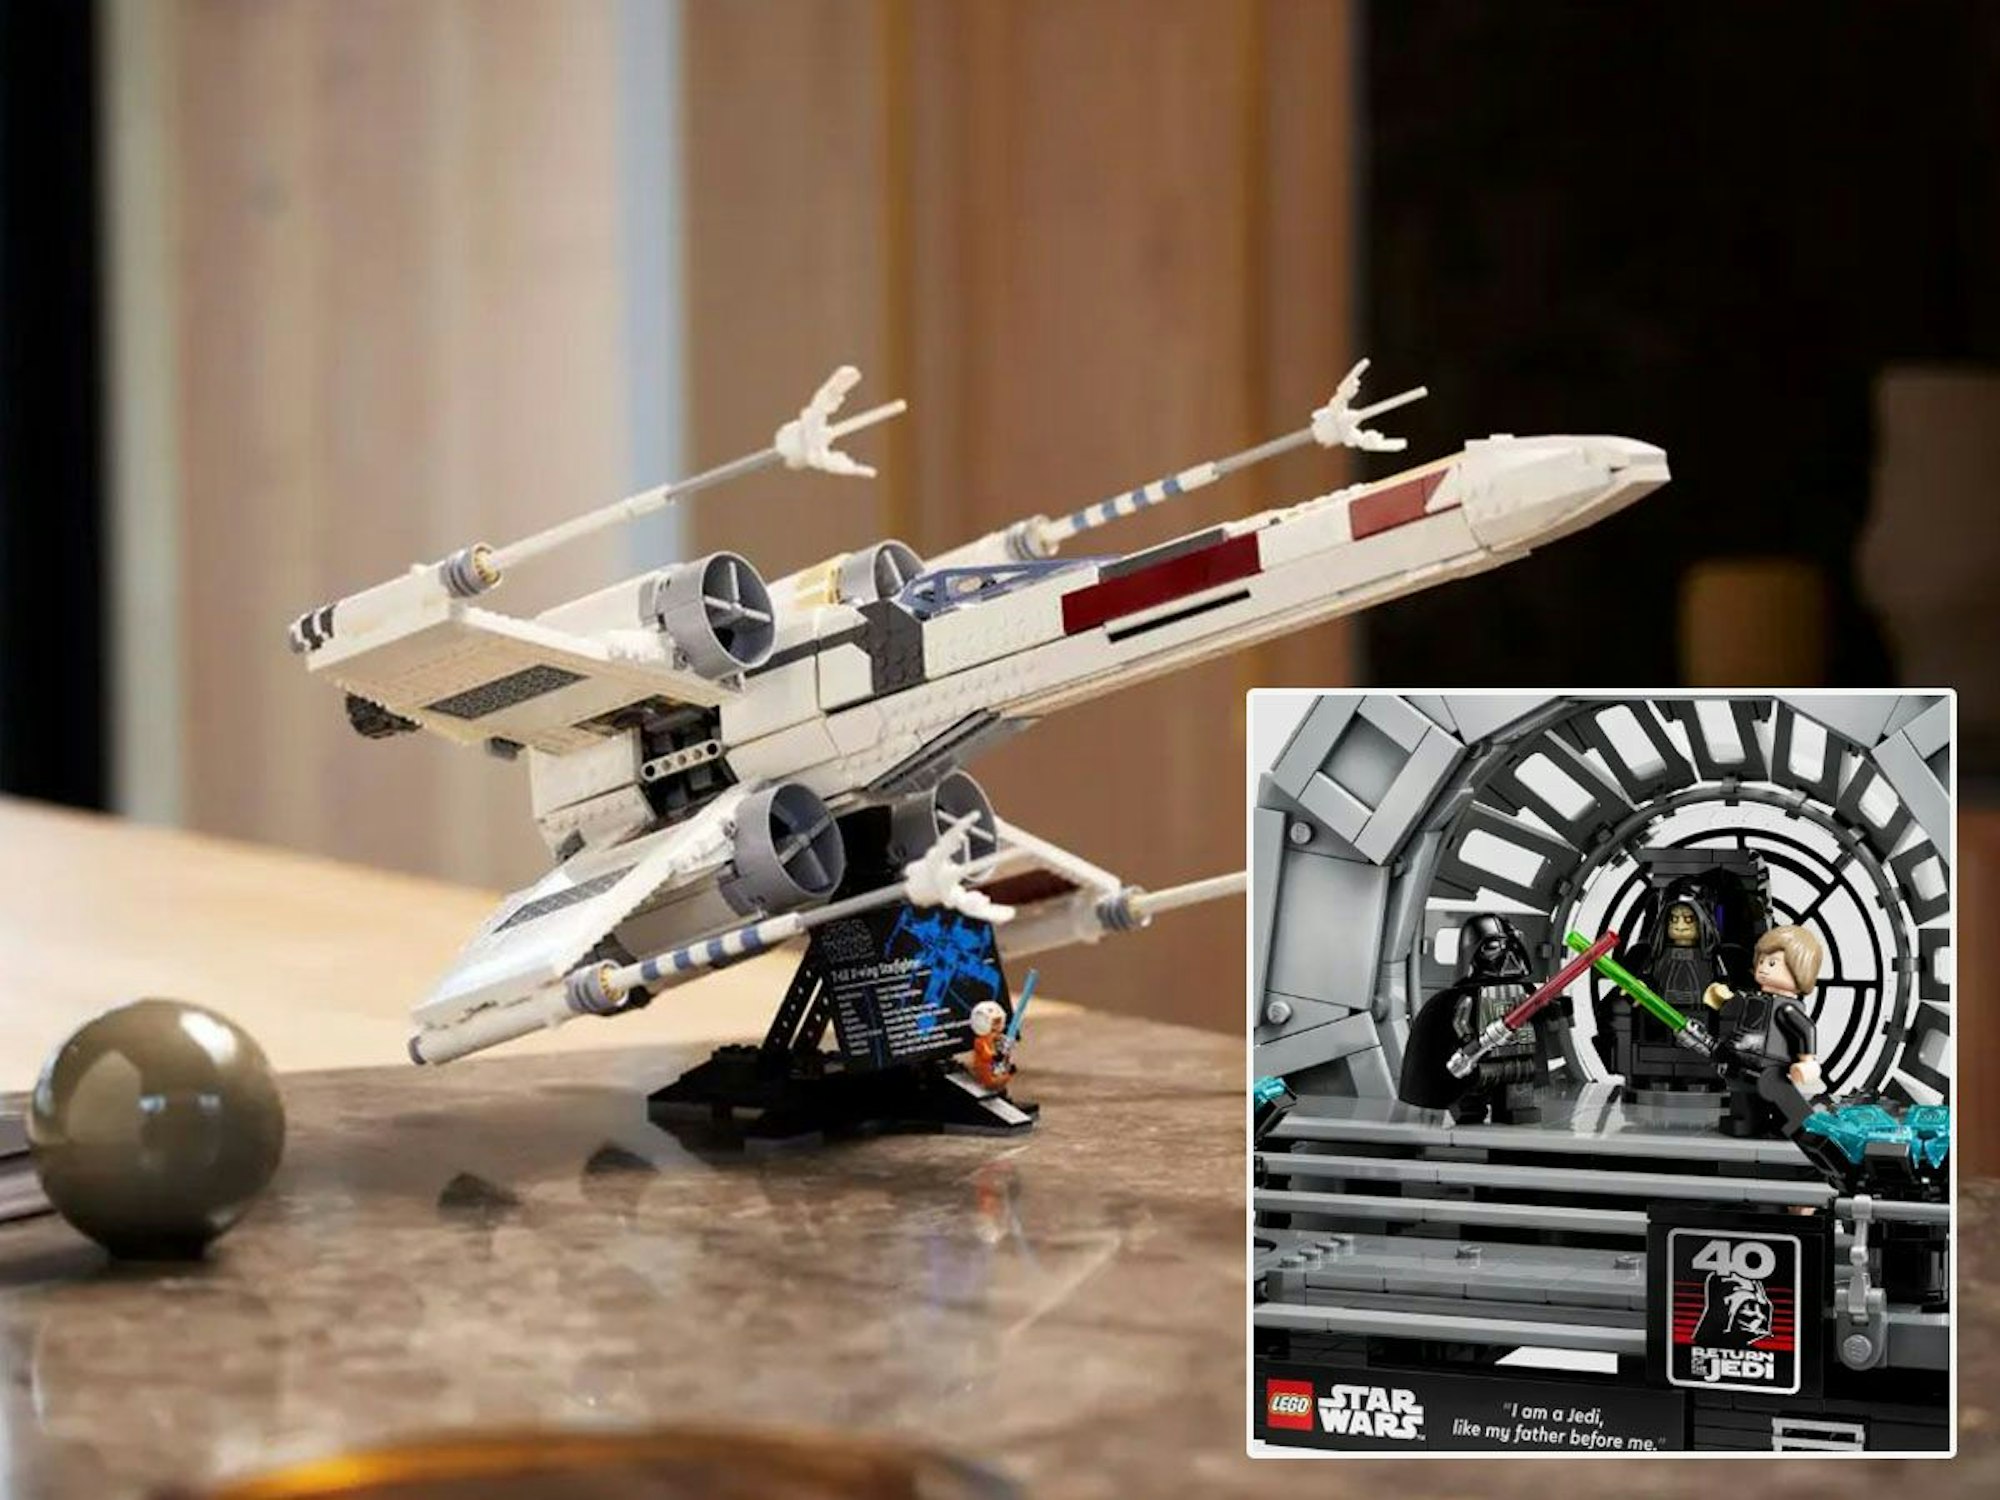 Die Lego Star Wars Neuheiten Lego X Wing Starfighter und Thronsaal des Imperators stehen auf dem Tisch.